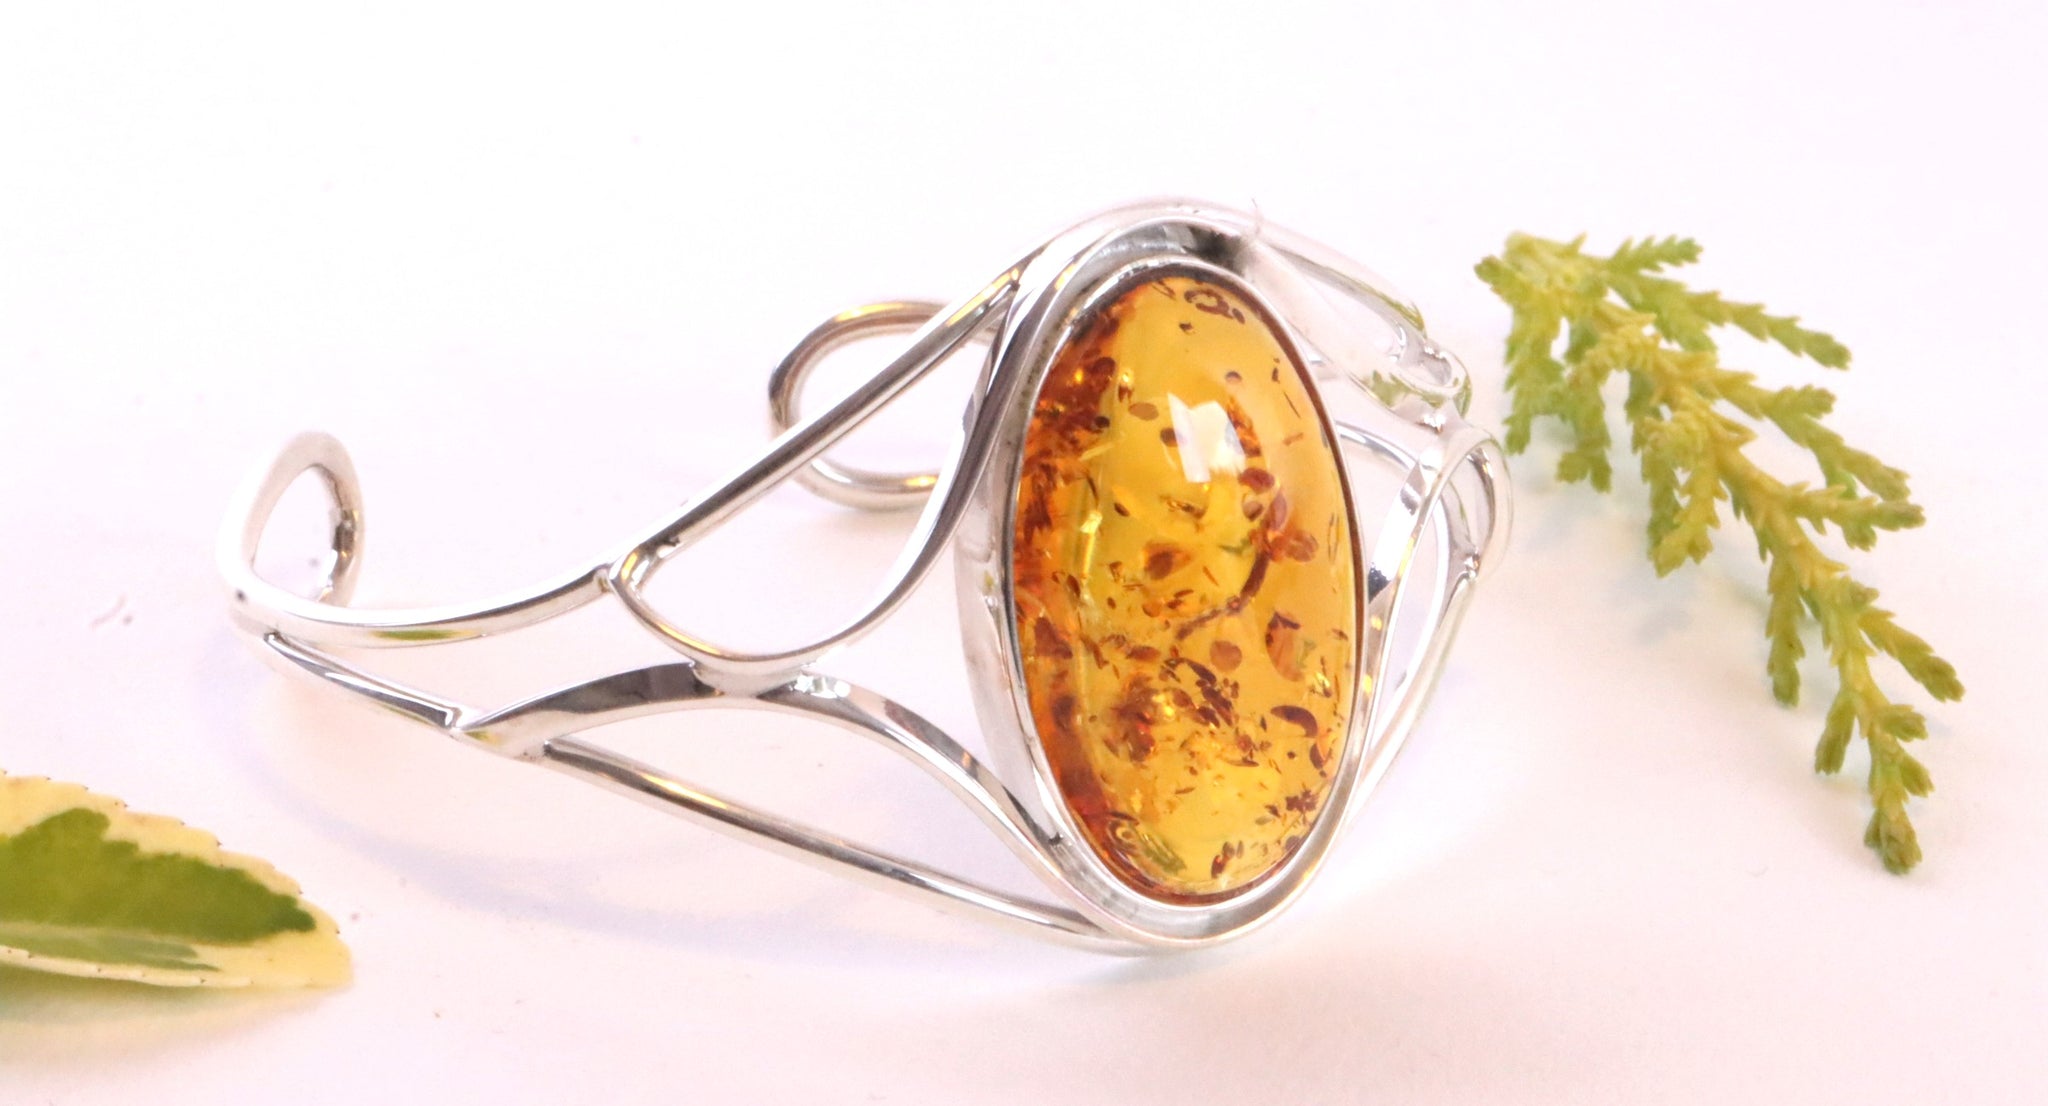 Silver Bangle Honey Amber Gemstone Adjustable Bangle with FREE Pendant